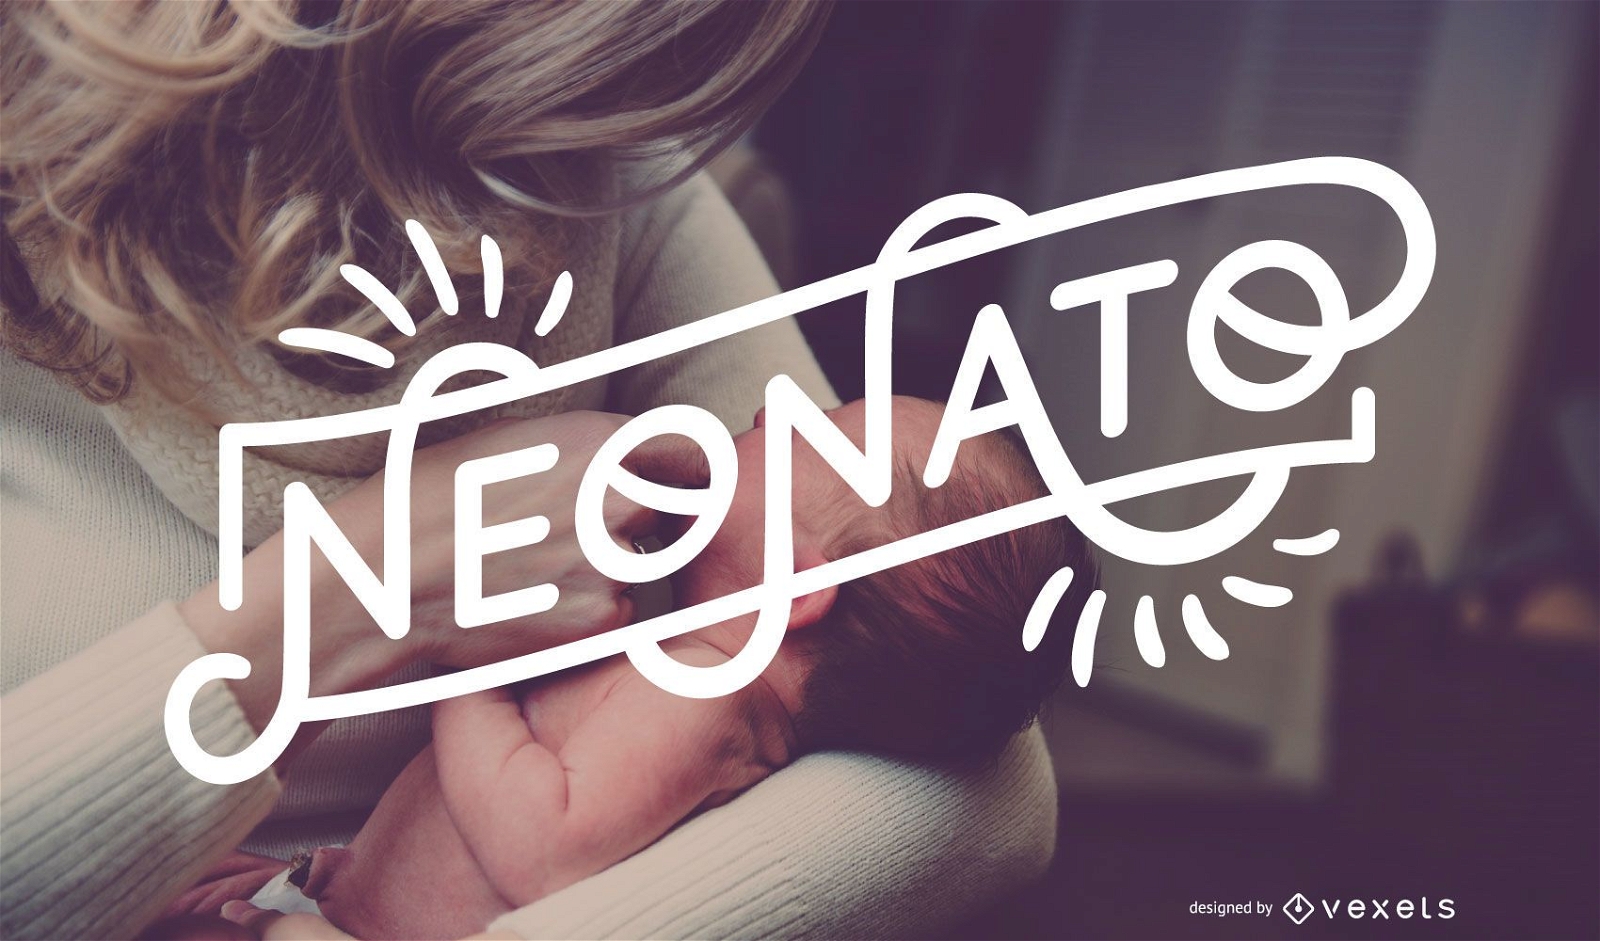 Download Neonato Baby Boy Italian Lettering Banner - Vector Download